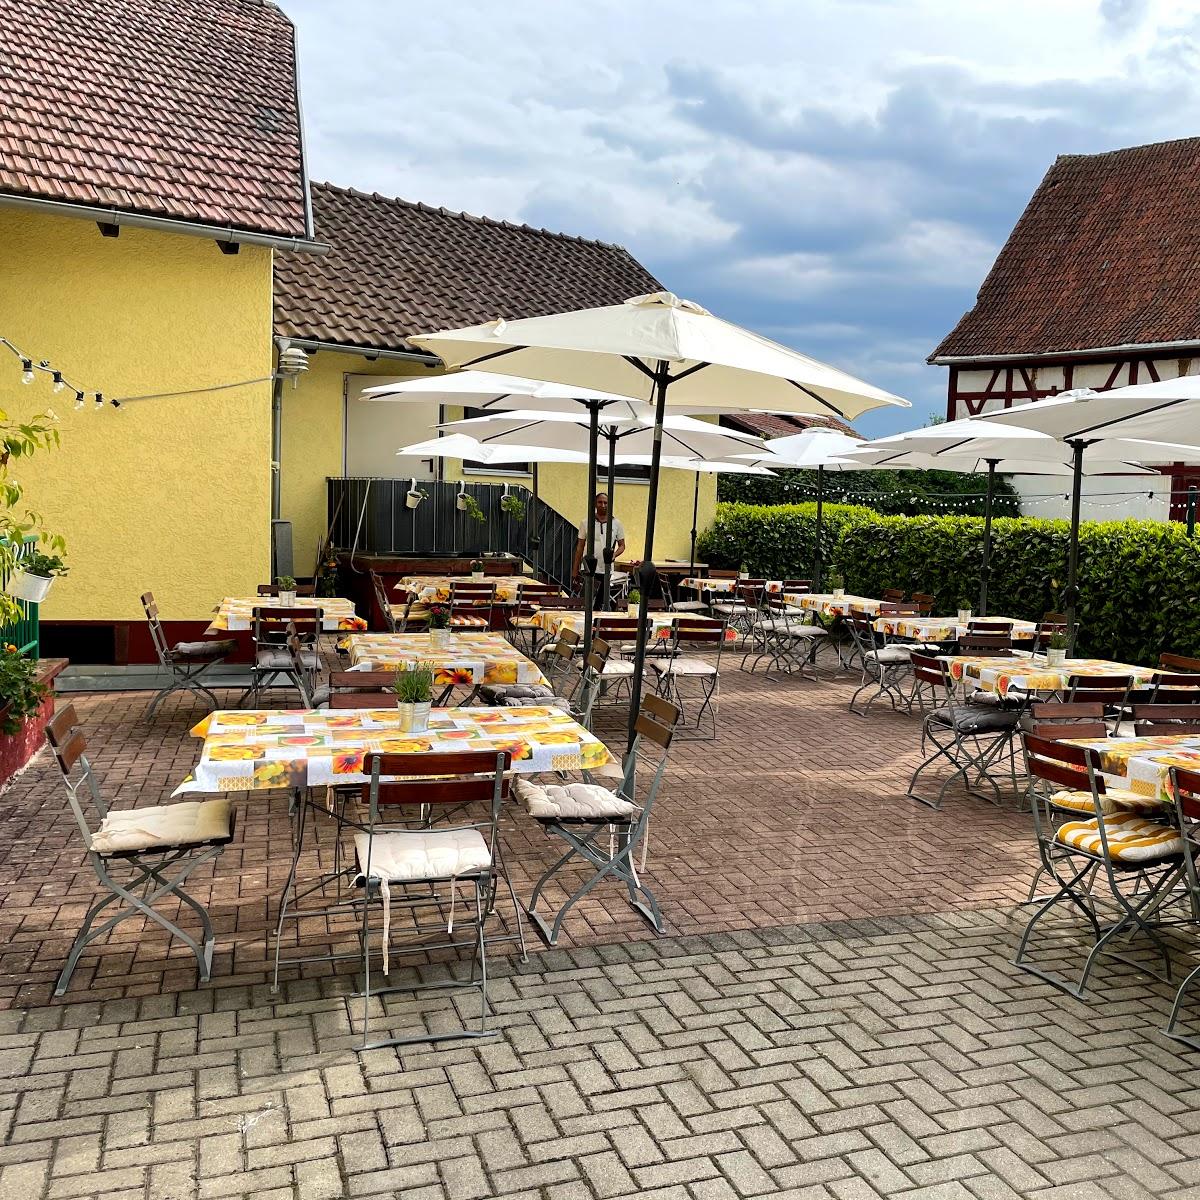 Restaurant "Hessenhof" in  Coburg